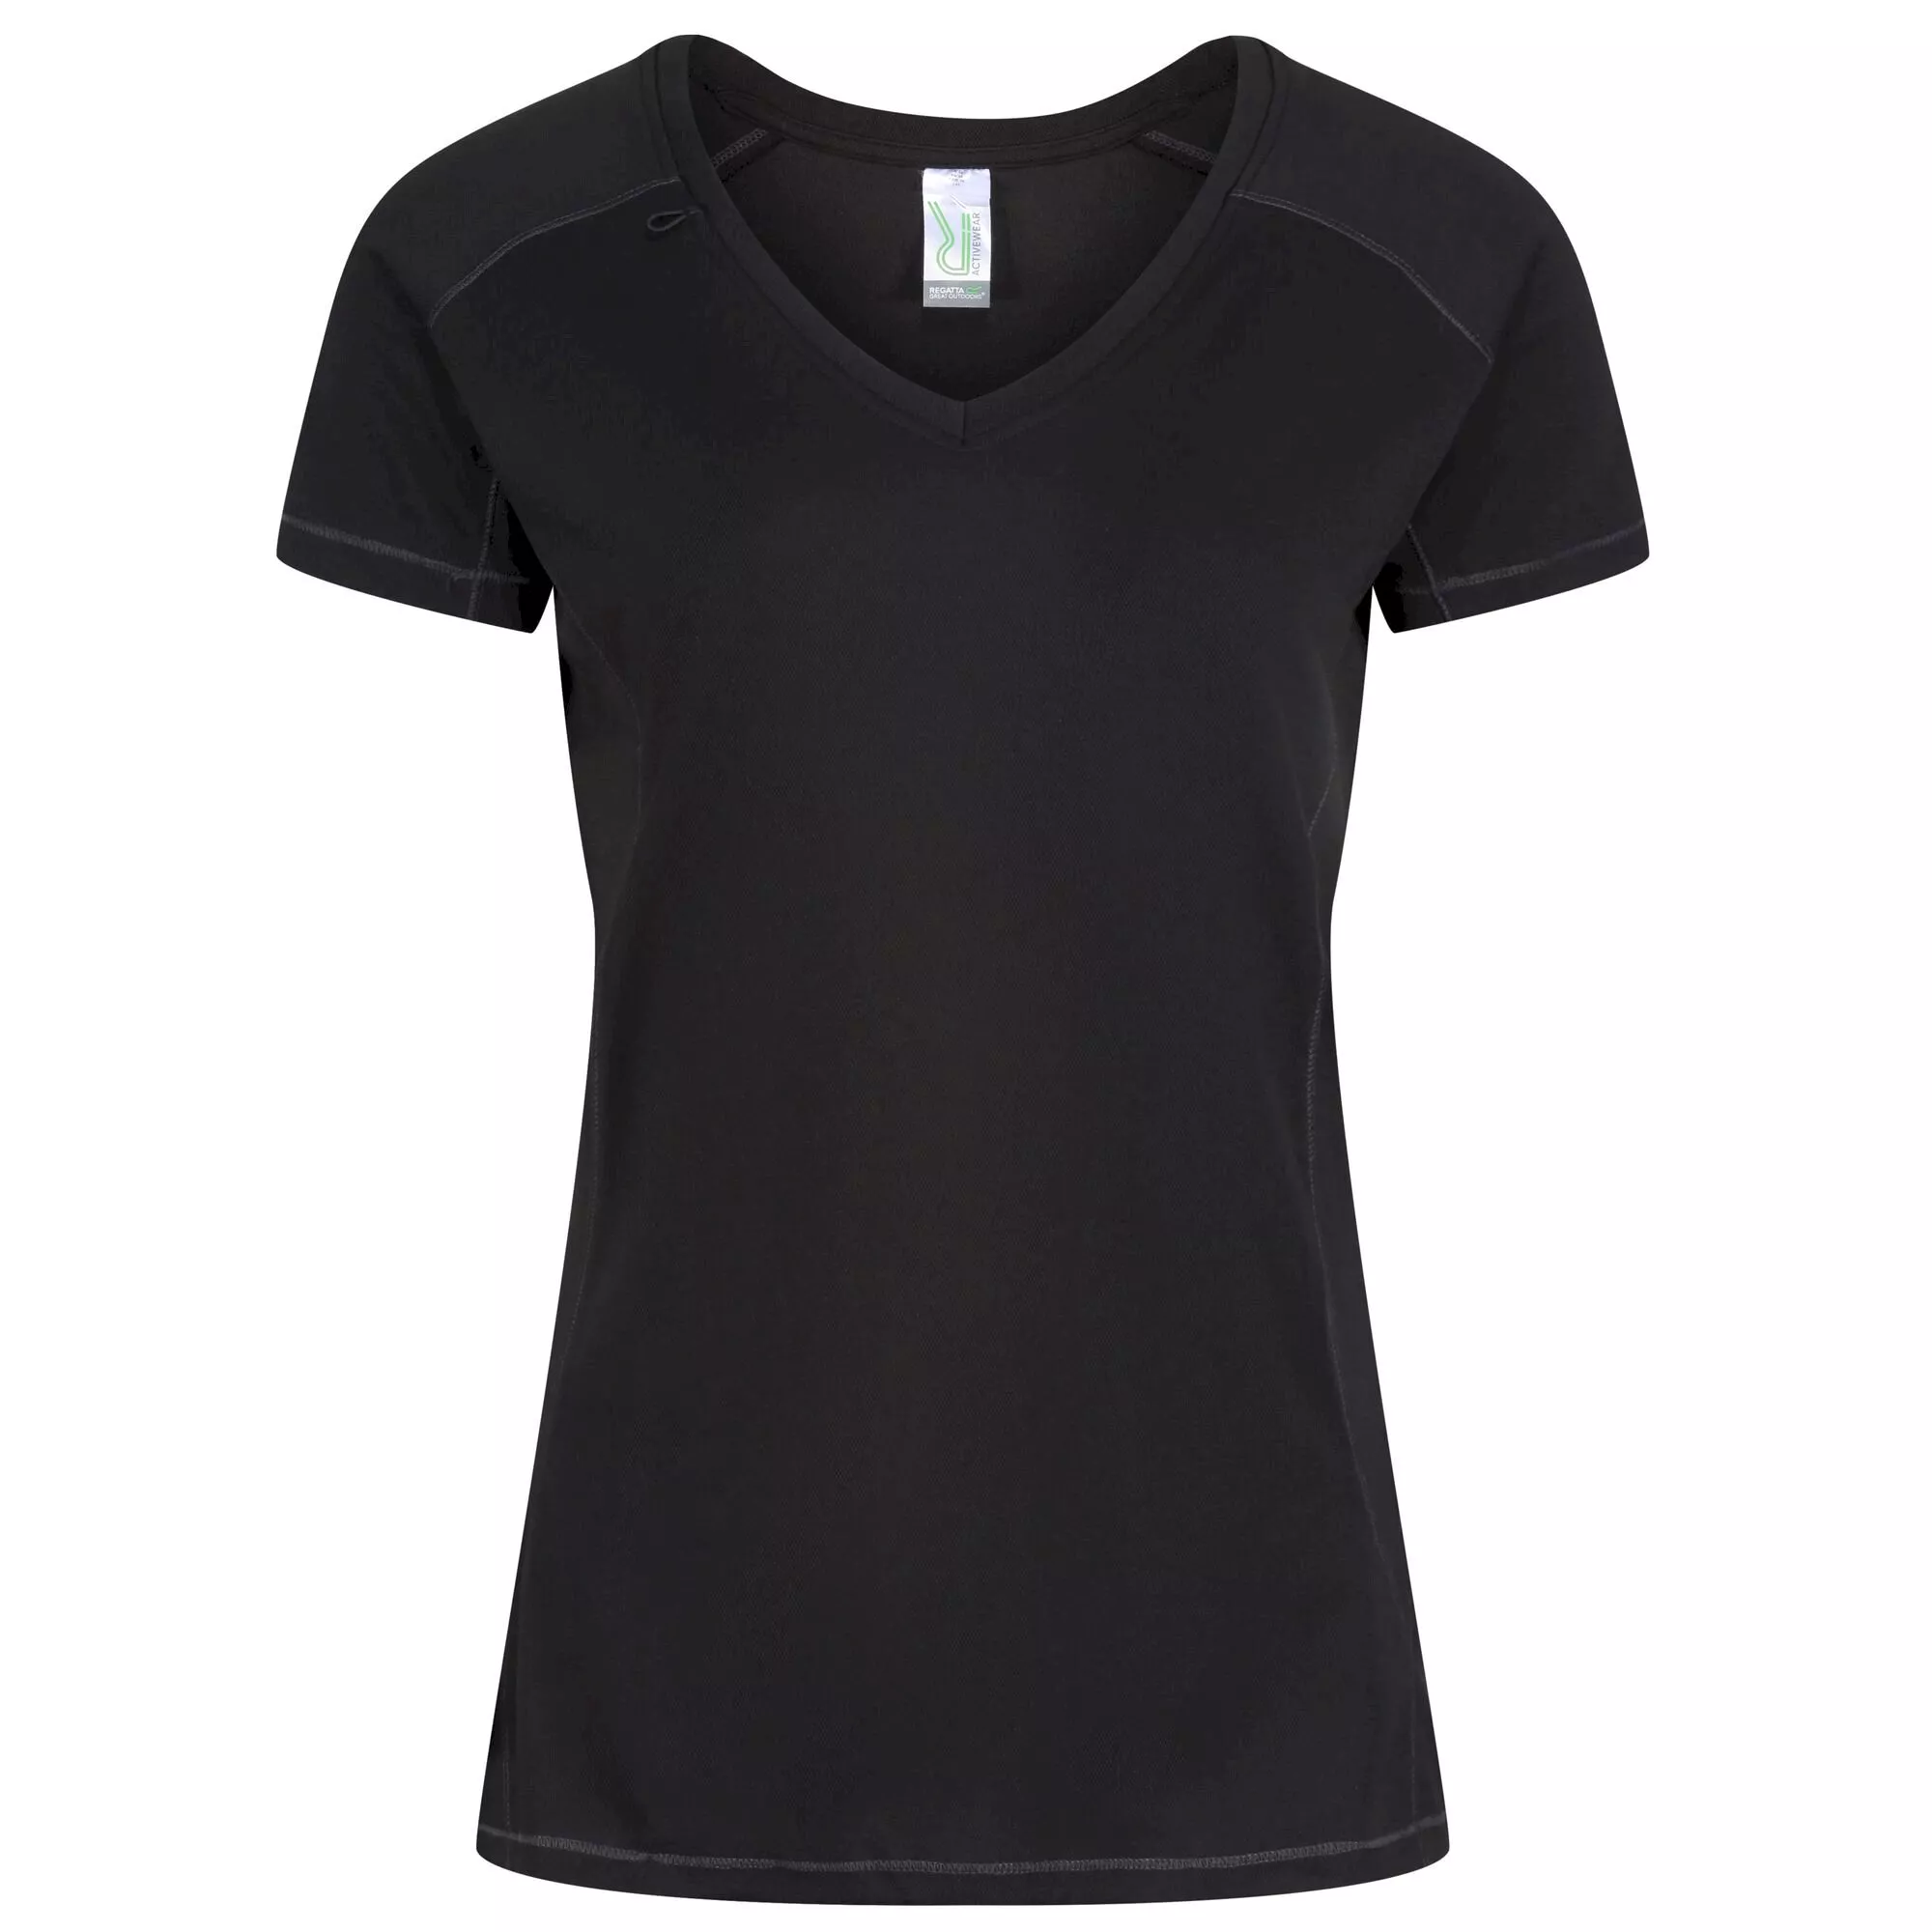 Women's Beijing Lightweight Cool and Dry T-Shirt - Black